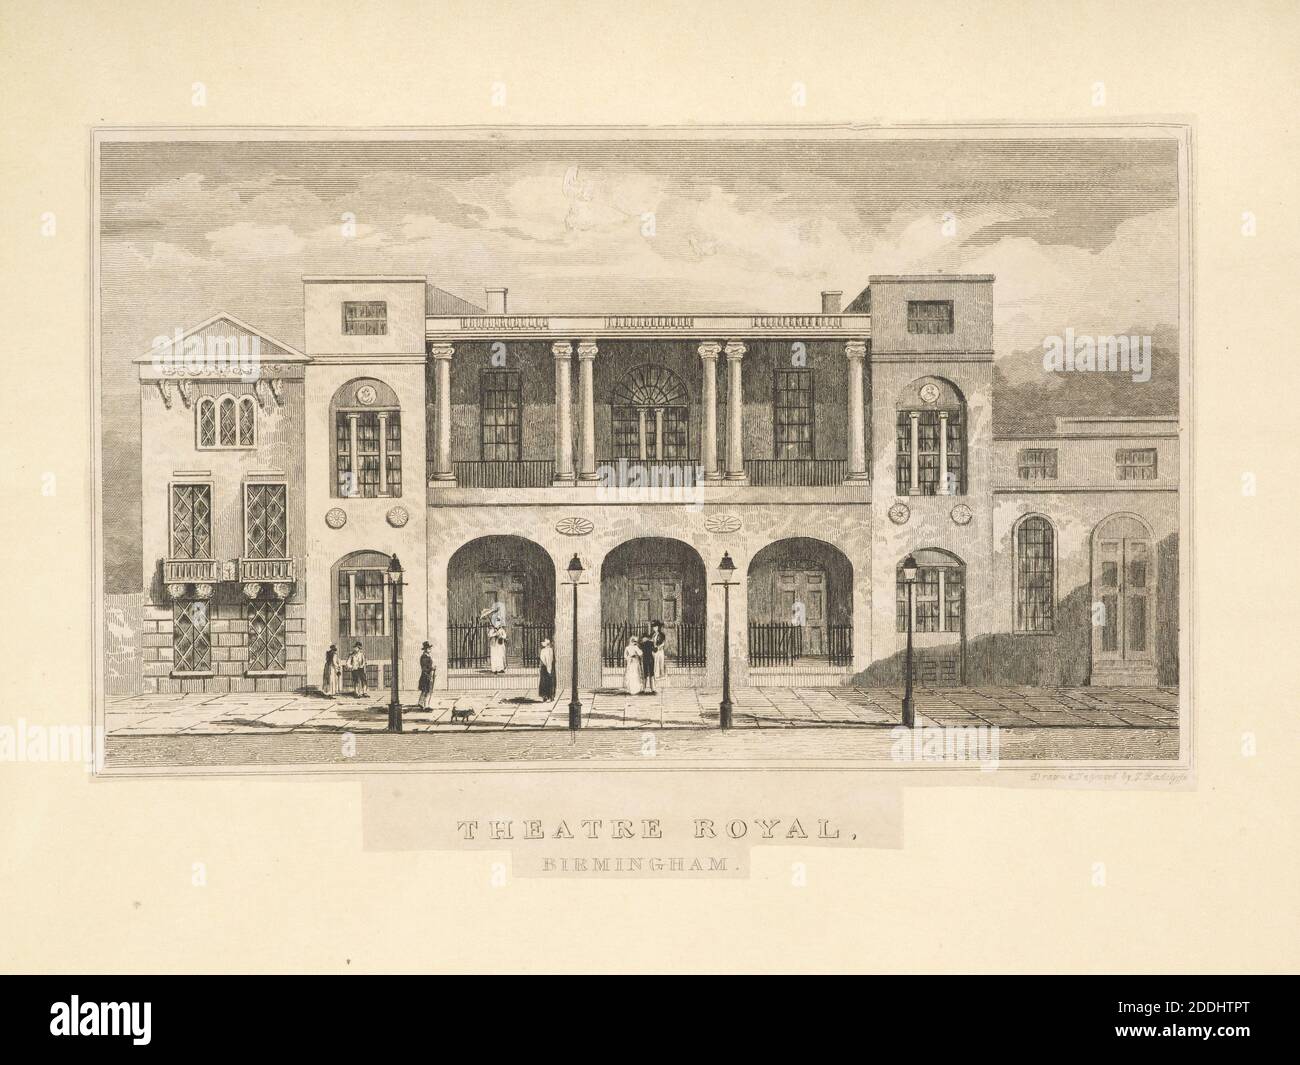 Theatre Royal, New Street, Birmingham artiste: Thomas Radclyffe, vues topographiques, Théâtre, Birmingham histoire Banque D'Images